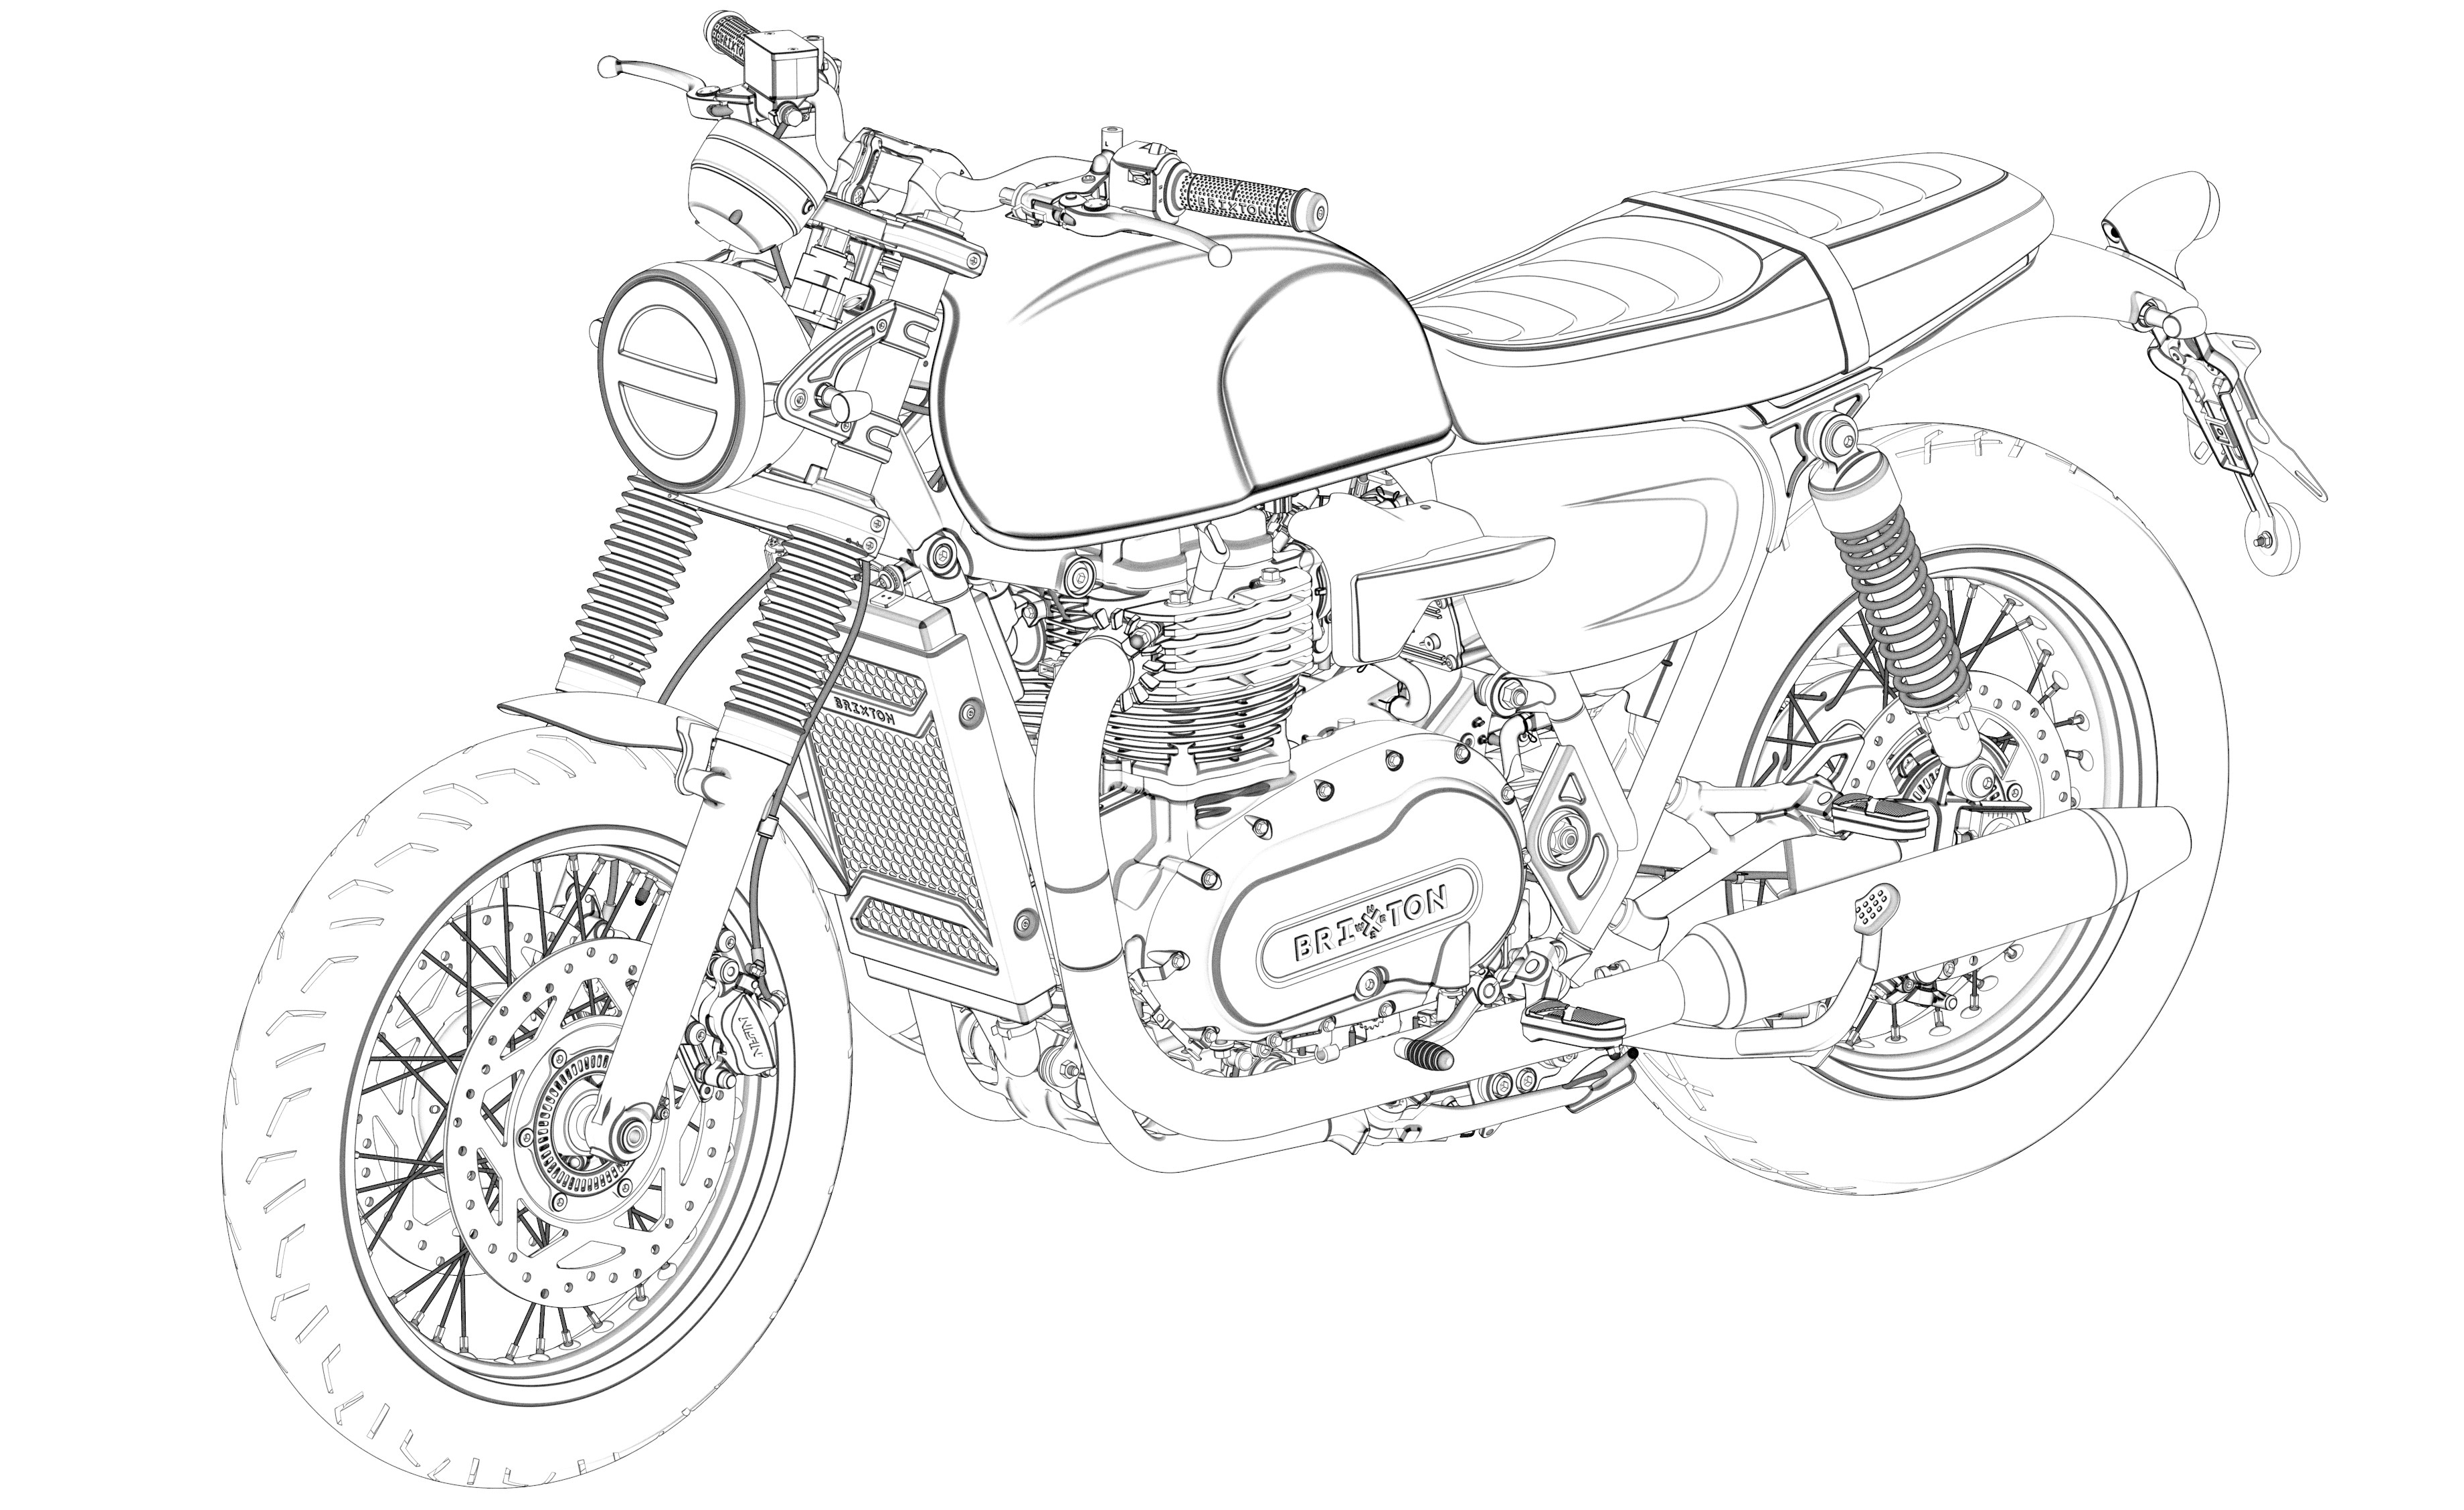 布里克斯顿摩托车生产设计模型的左前视图